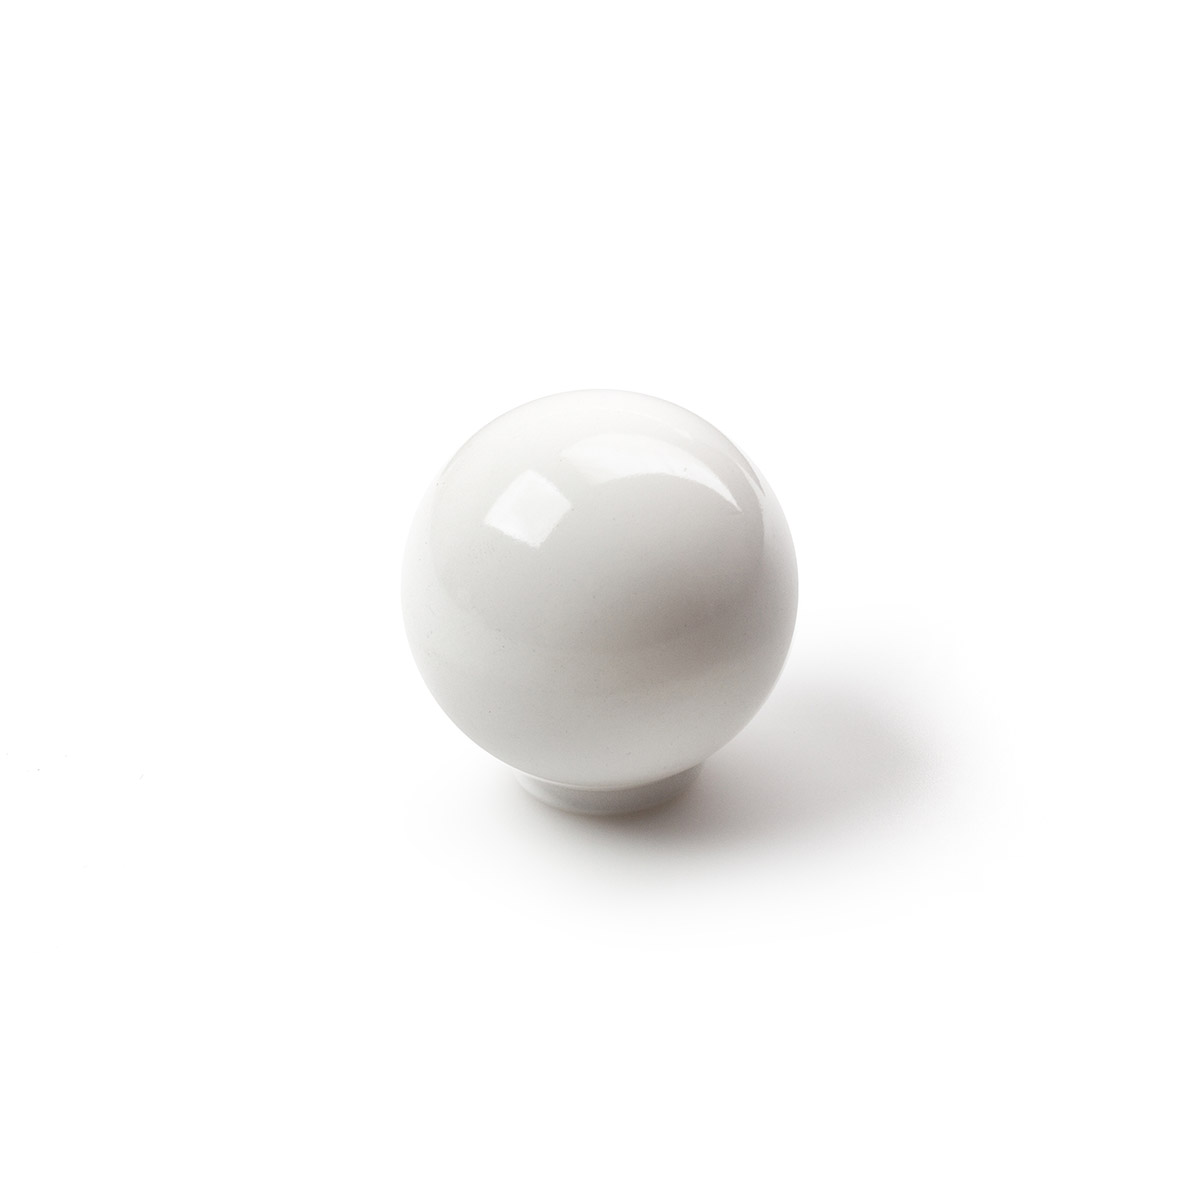 Bouton en plastique avec finition blanche, dimensions: 34x34x36mm Ø: 34mm